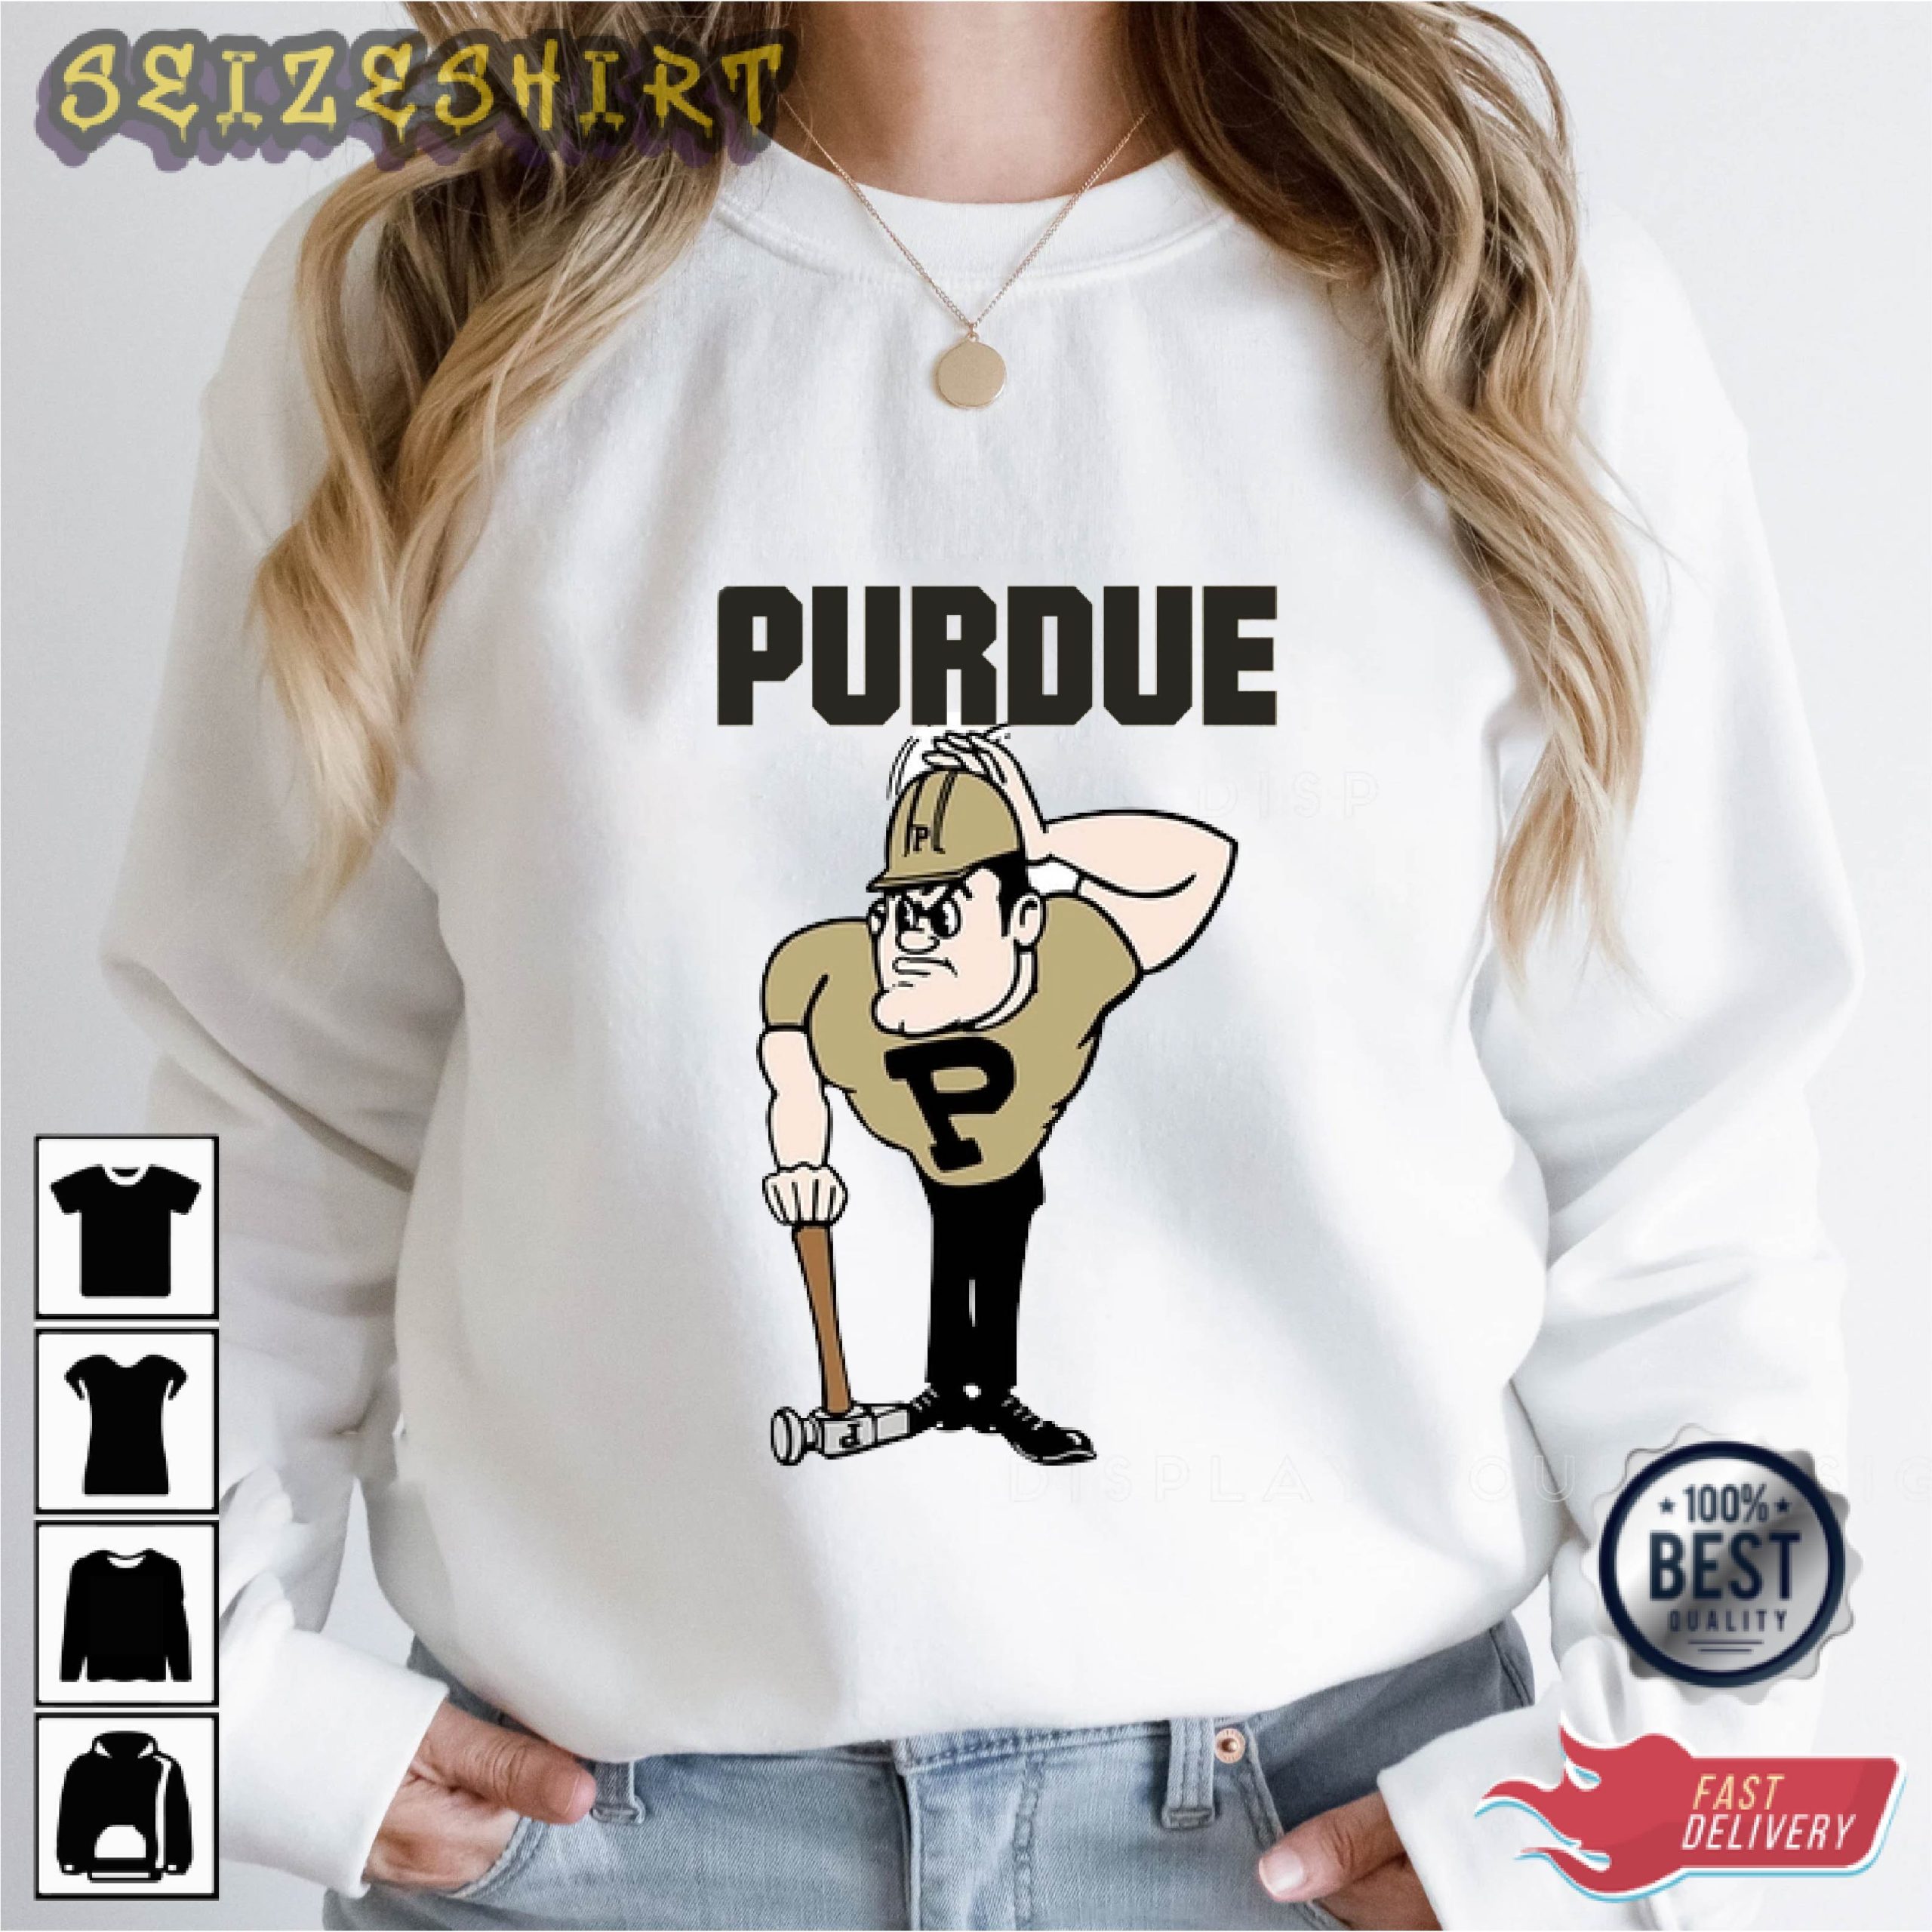 Purdue Softball Graphic Tee